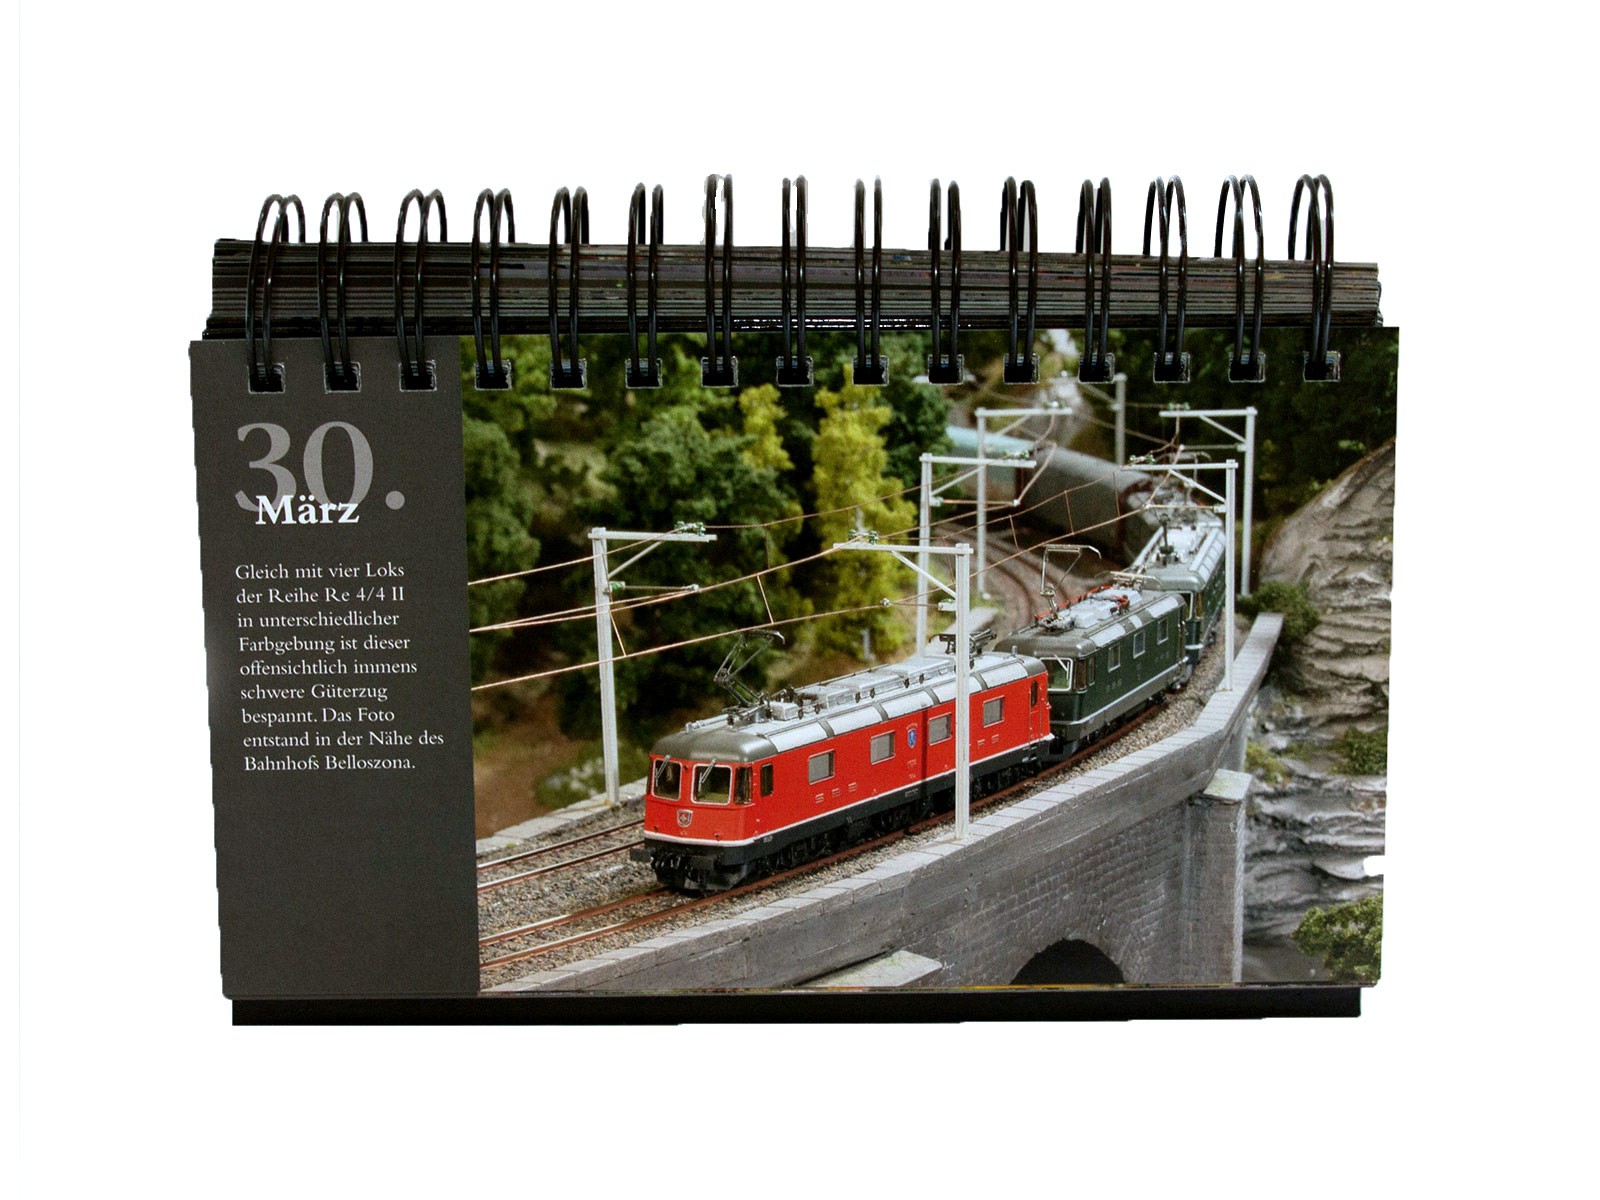 Miniatur Wunderland - immerwährender Kalender - mit 366 Bildern (Freunde)